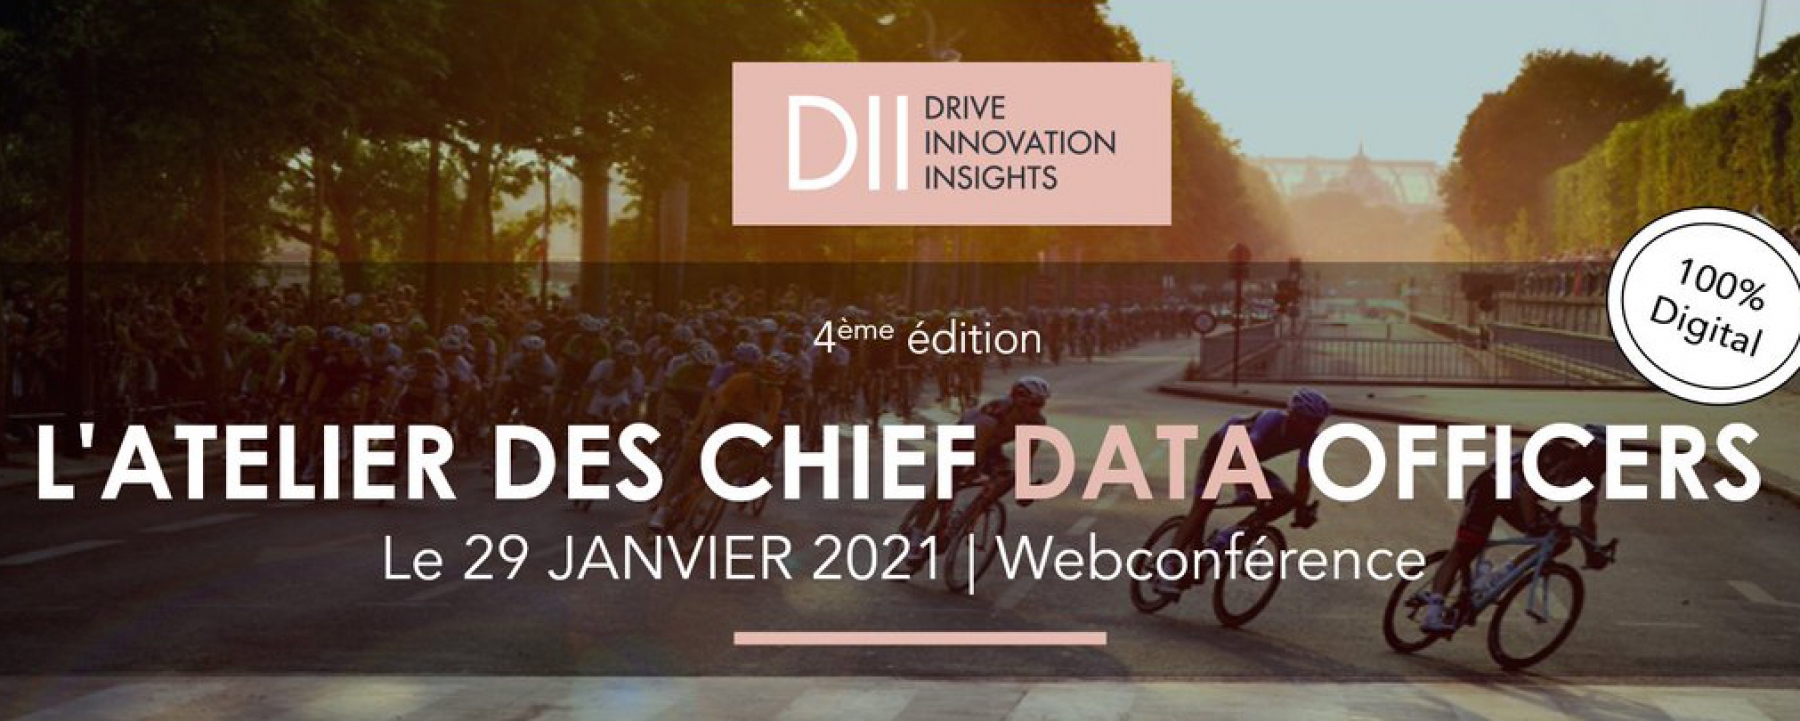 L’atelier des Chief Data Officers, un événement organisé par DII le 29 janvier 2021